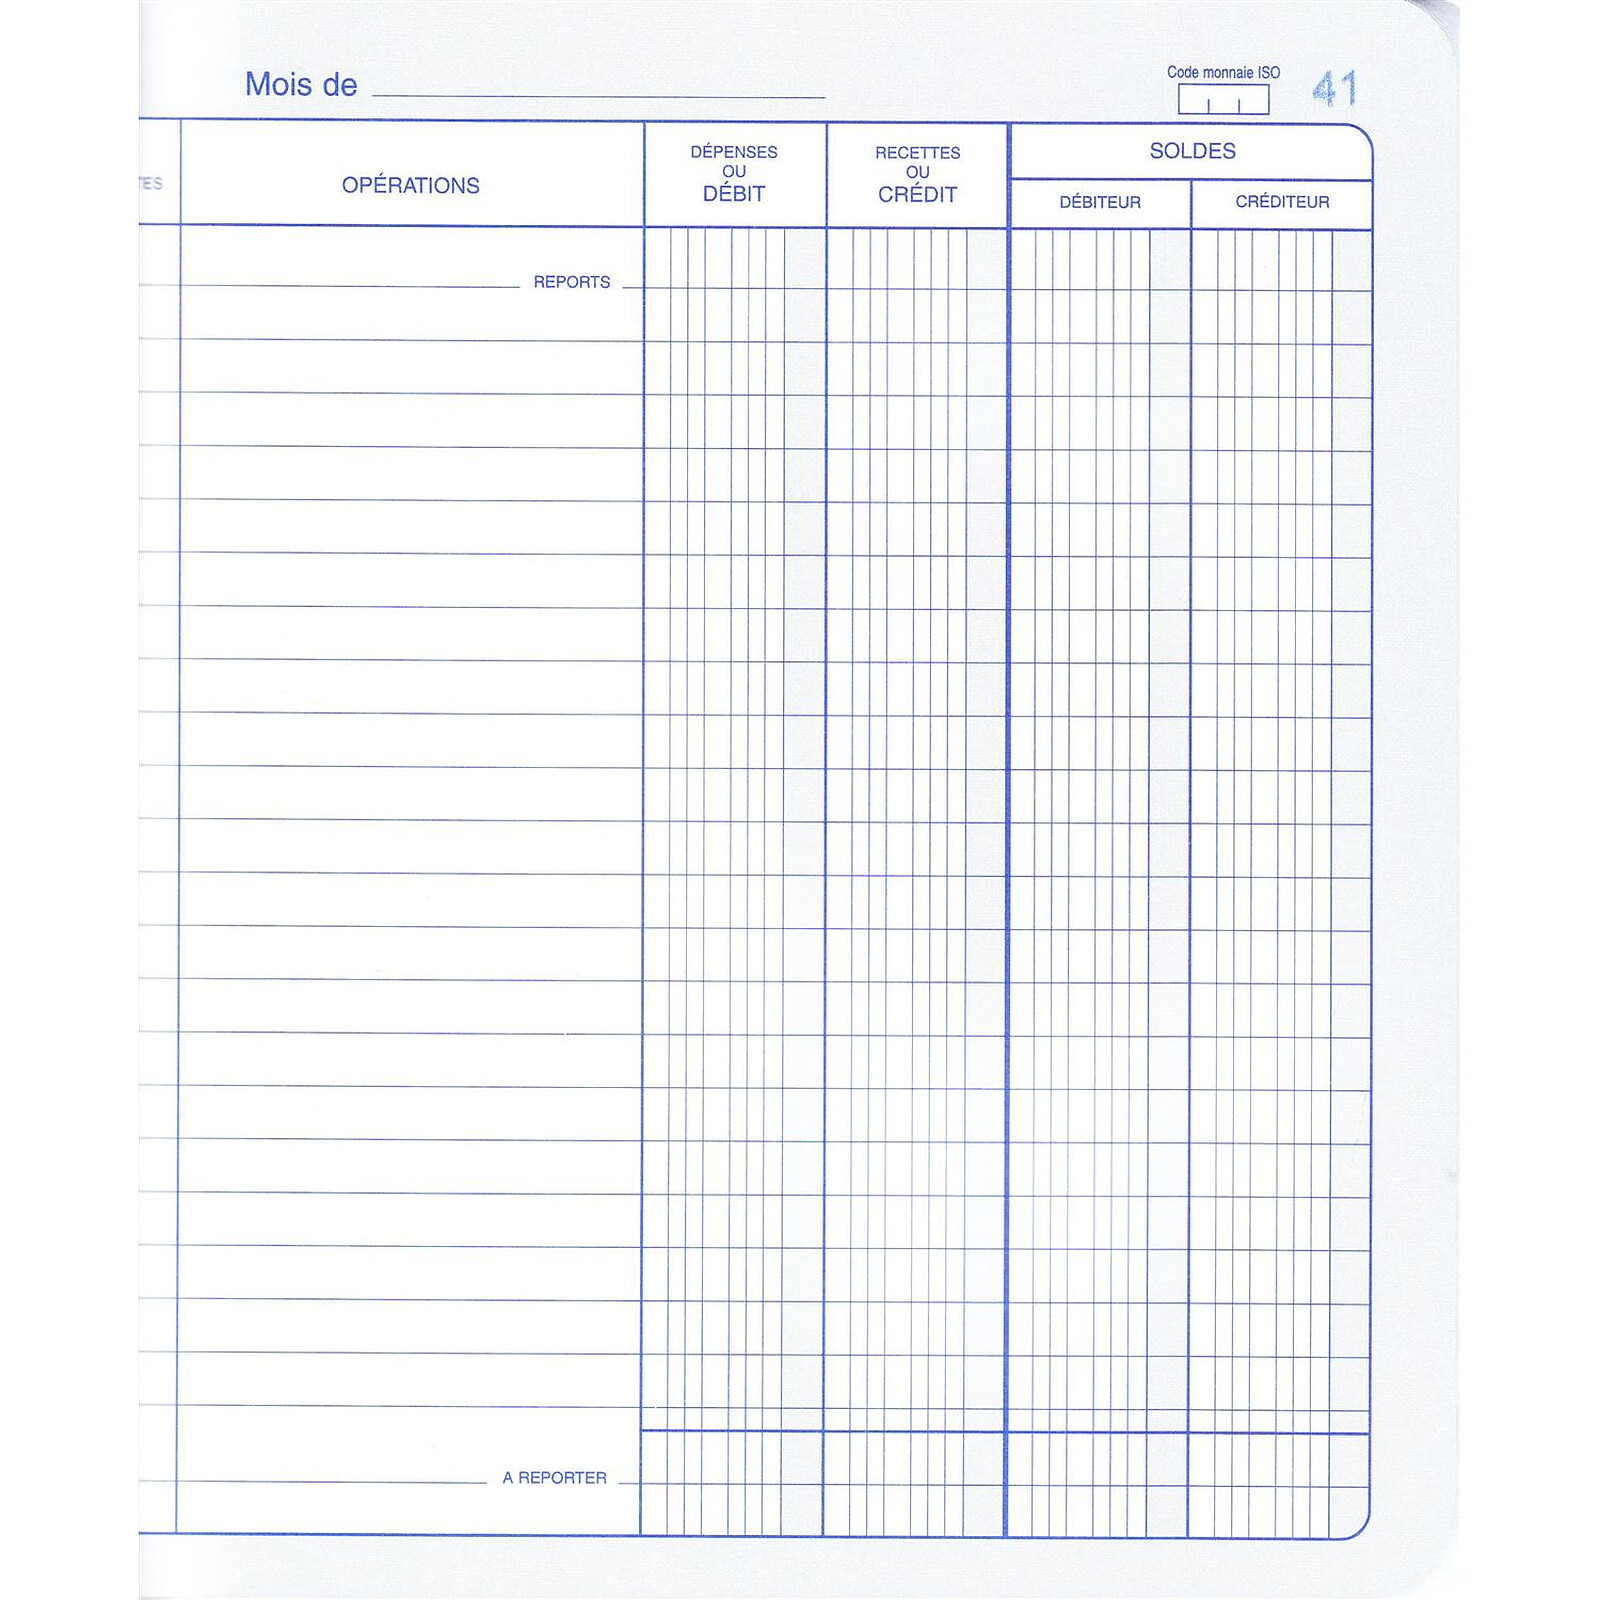 Stock Bureau - ELVE Carnet de Position de Compte avec Protège-cahier 60  pages format 114 x 156